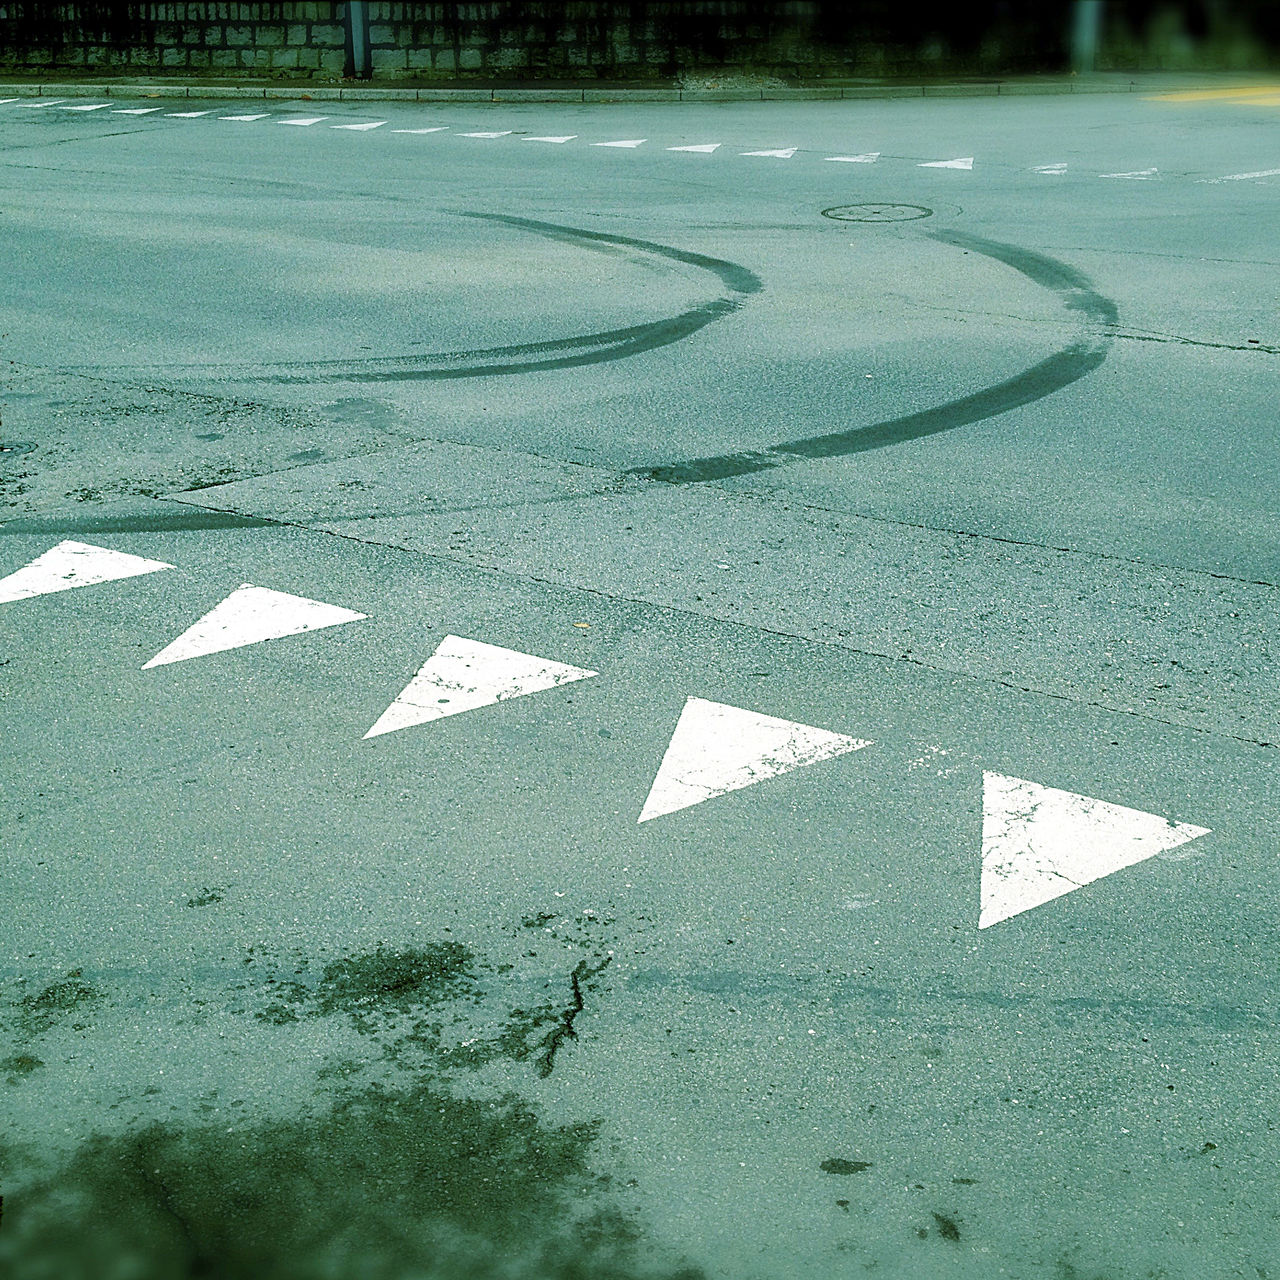 Eine grünlich-bläulich verfärbte Teerfläche. Die Straßenmarkierungen einer Einmündung zeigt kleine weiße Dreiecke, die wie spitze Zähne in Richtung des Betrachters zeigen. Darüber eine nach links kurvende Spur von Gummiabrieb.